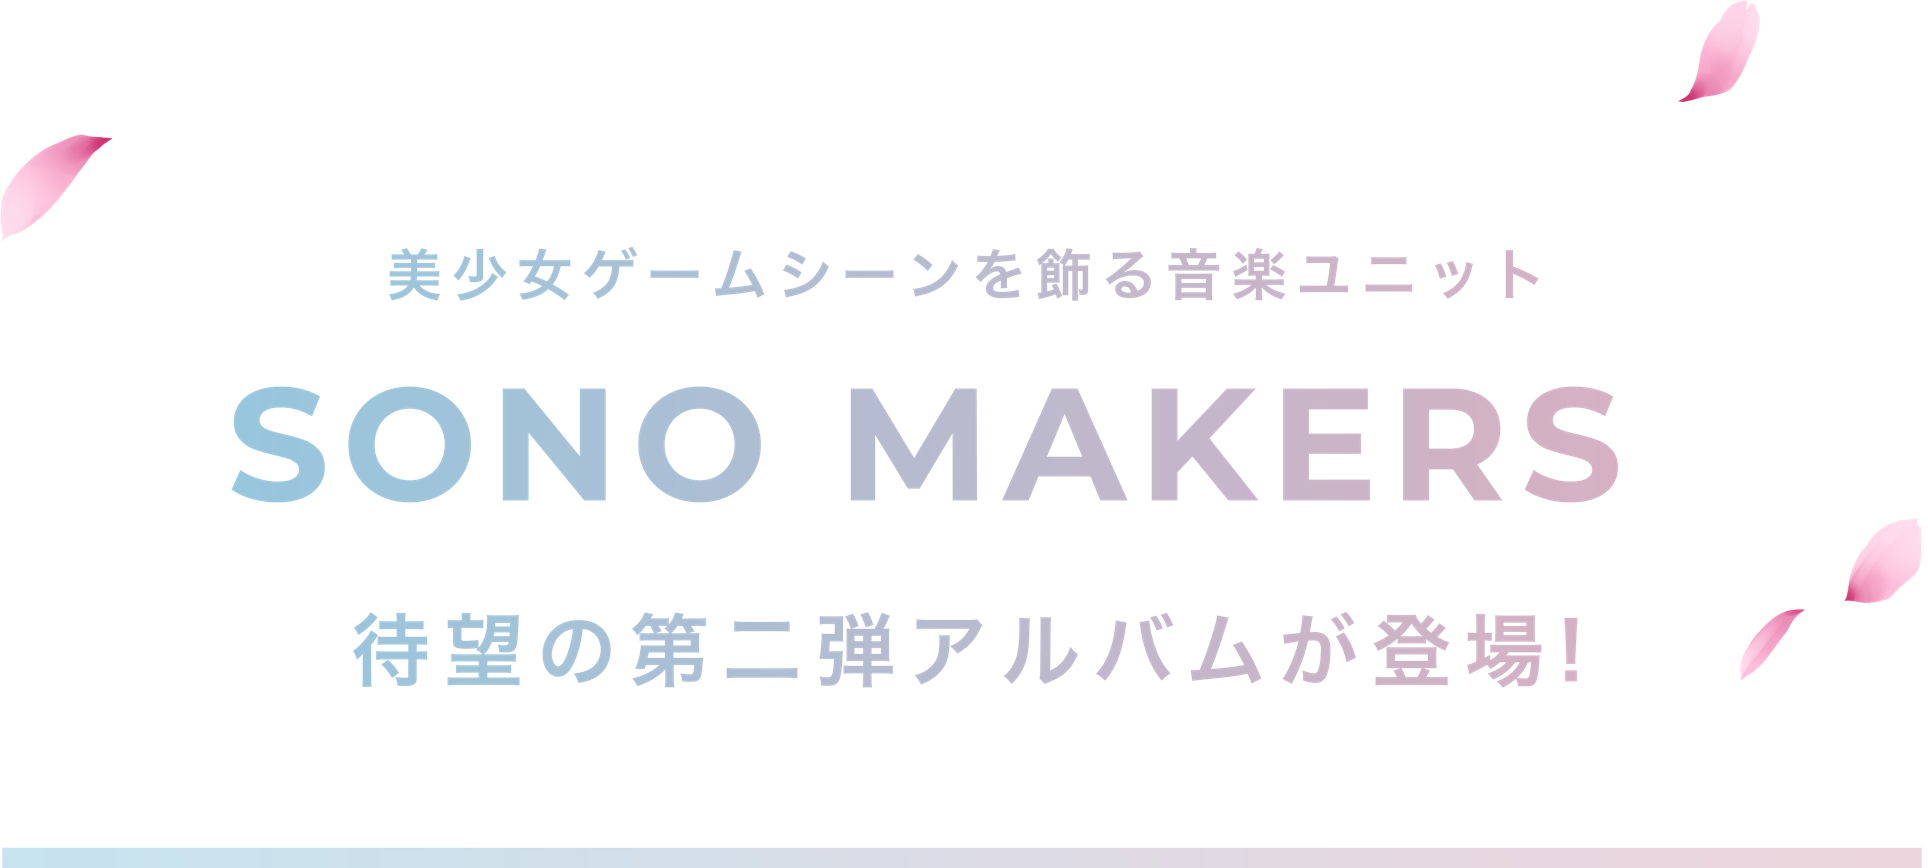 美少女ゲームシーンを飾る音楽ユニット SONO MAKERS 待望の第二弾アルバムが登場!